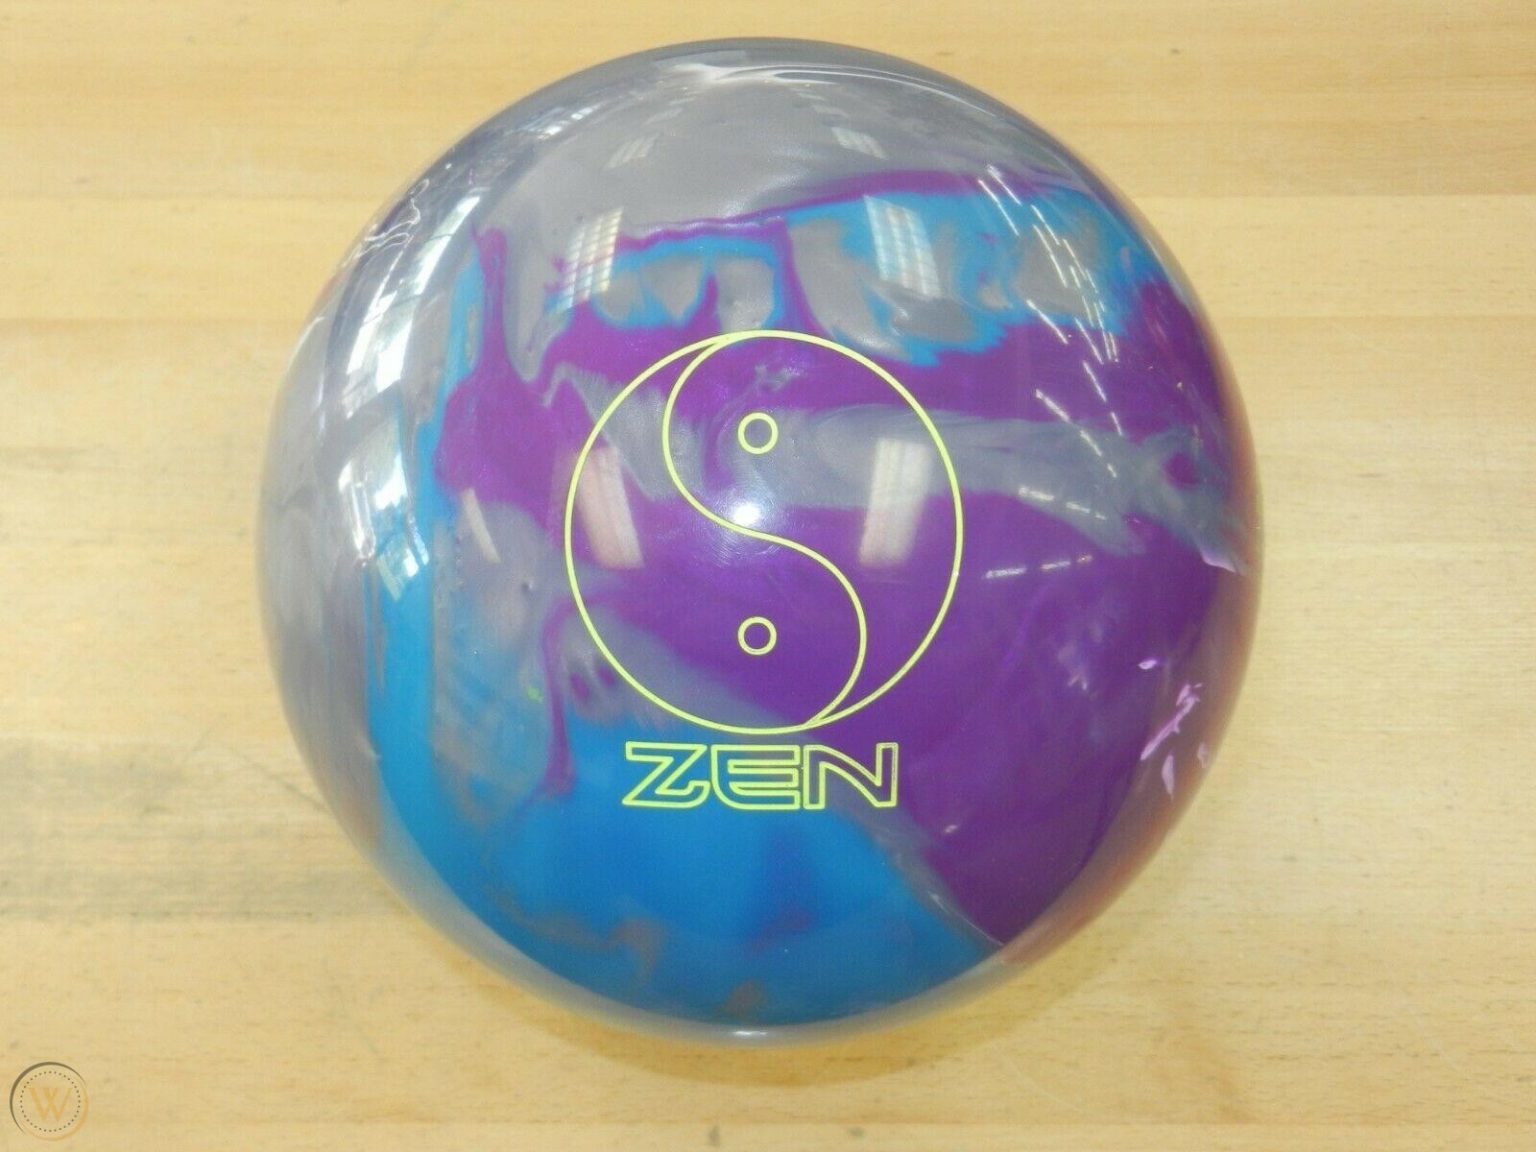 zen bowling ball